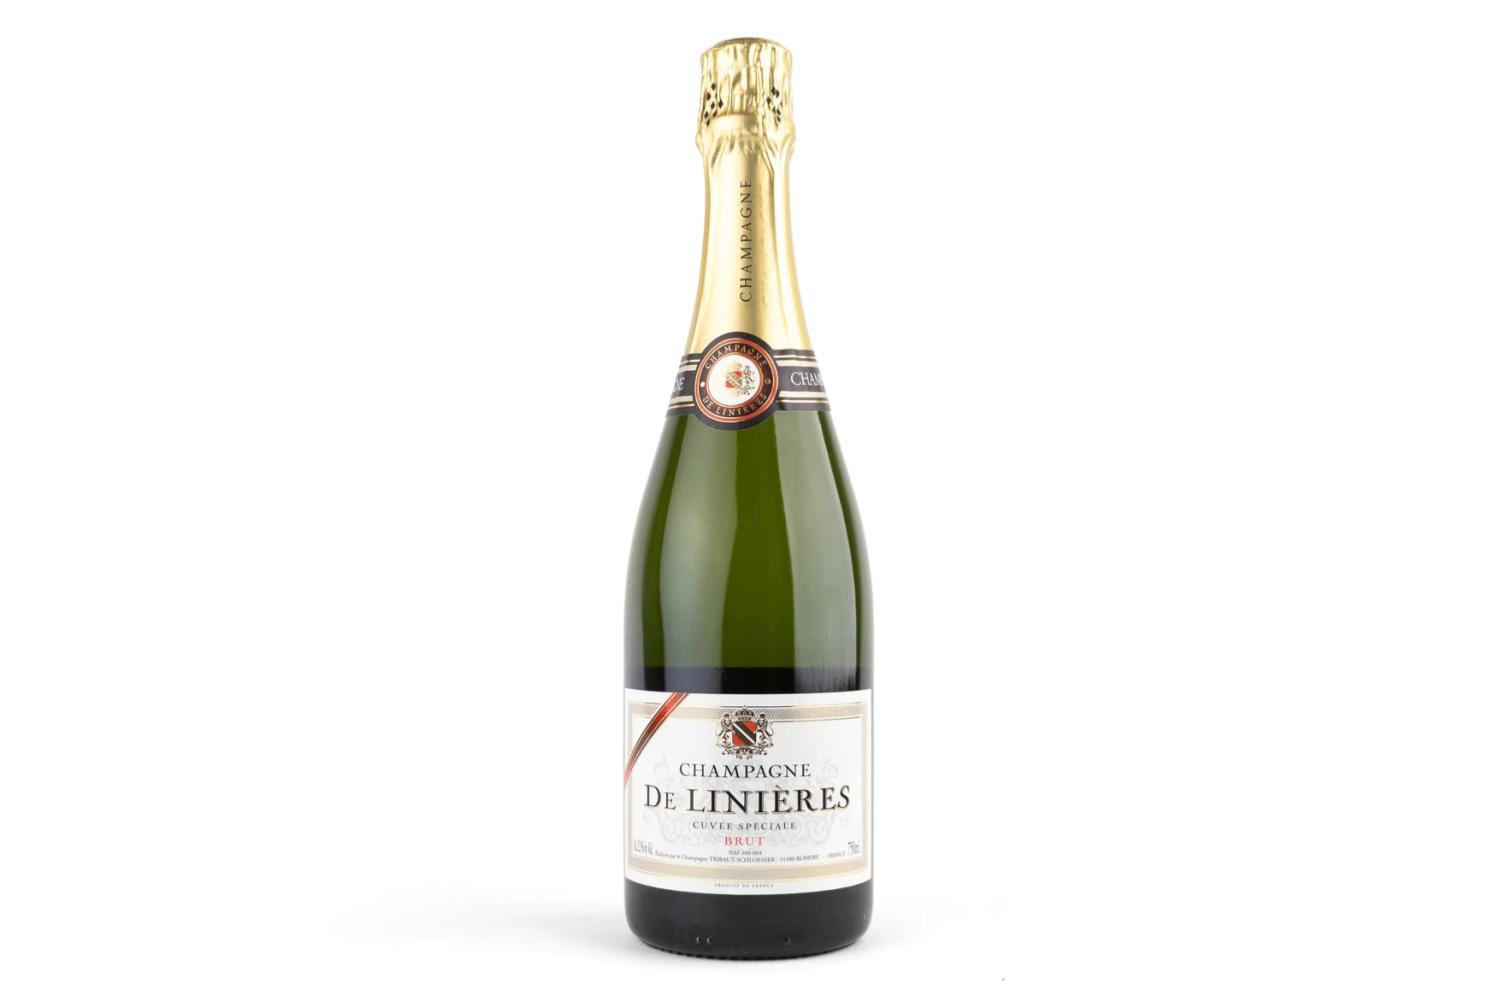 Brug Champagne De Linieres til en forbedret oplevelse